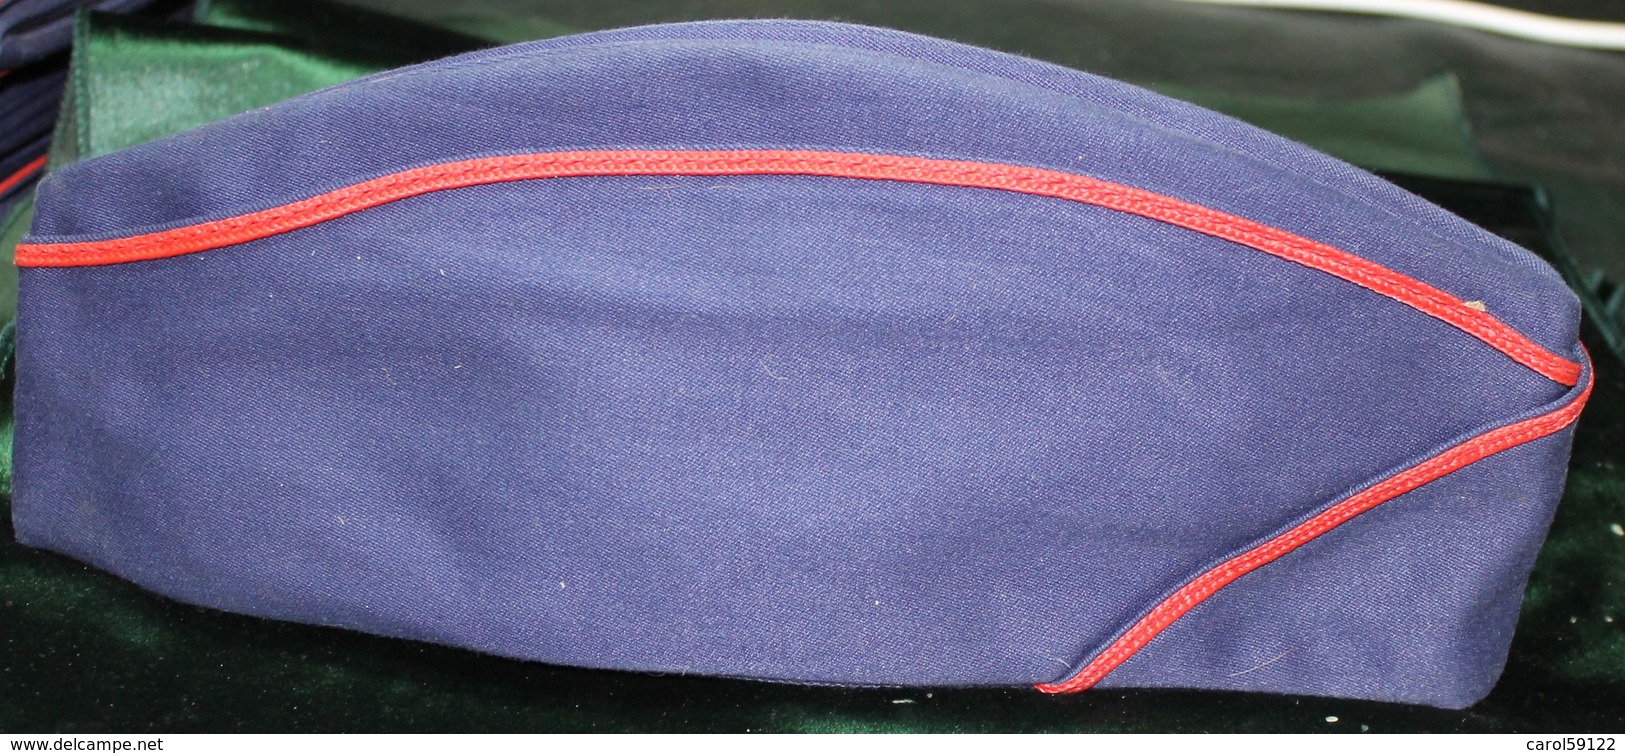 Calot Tissus Bleu Marine T 55 - Headpieces, Headdresses